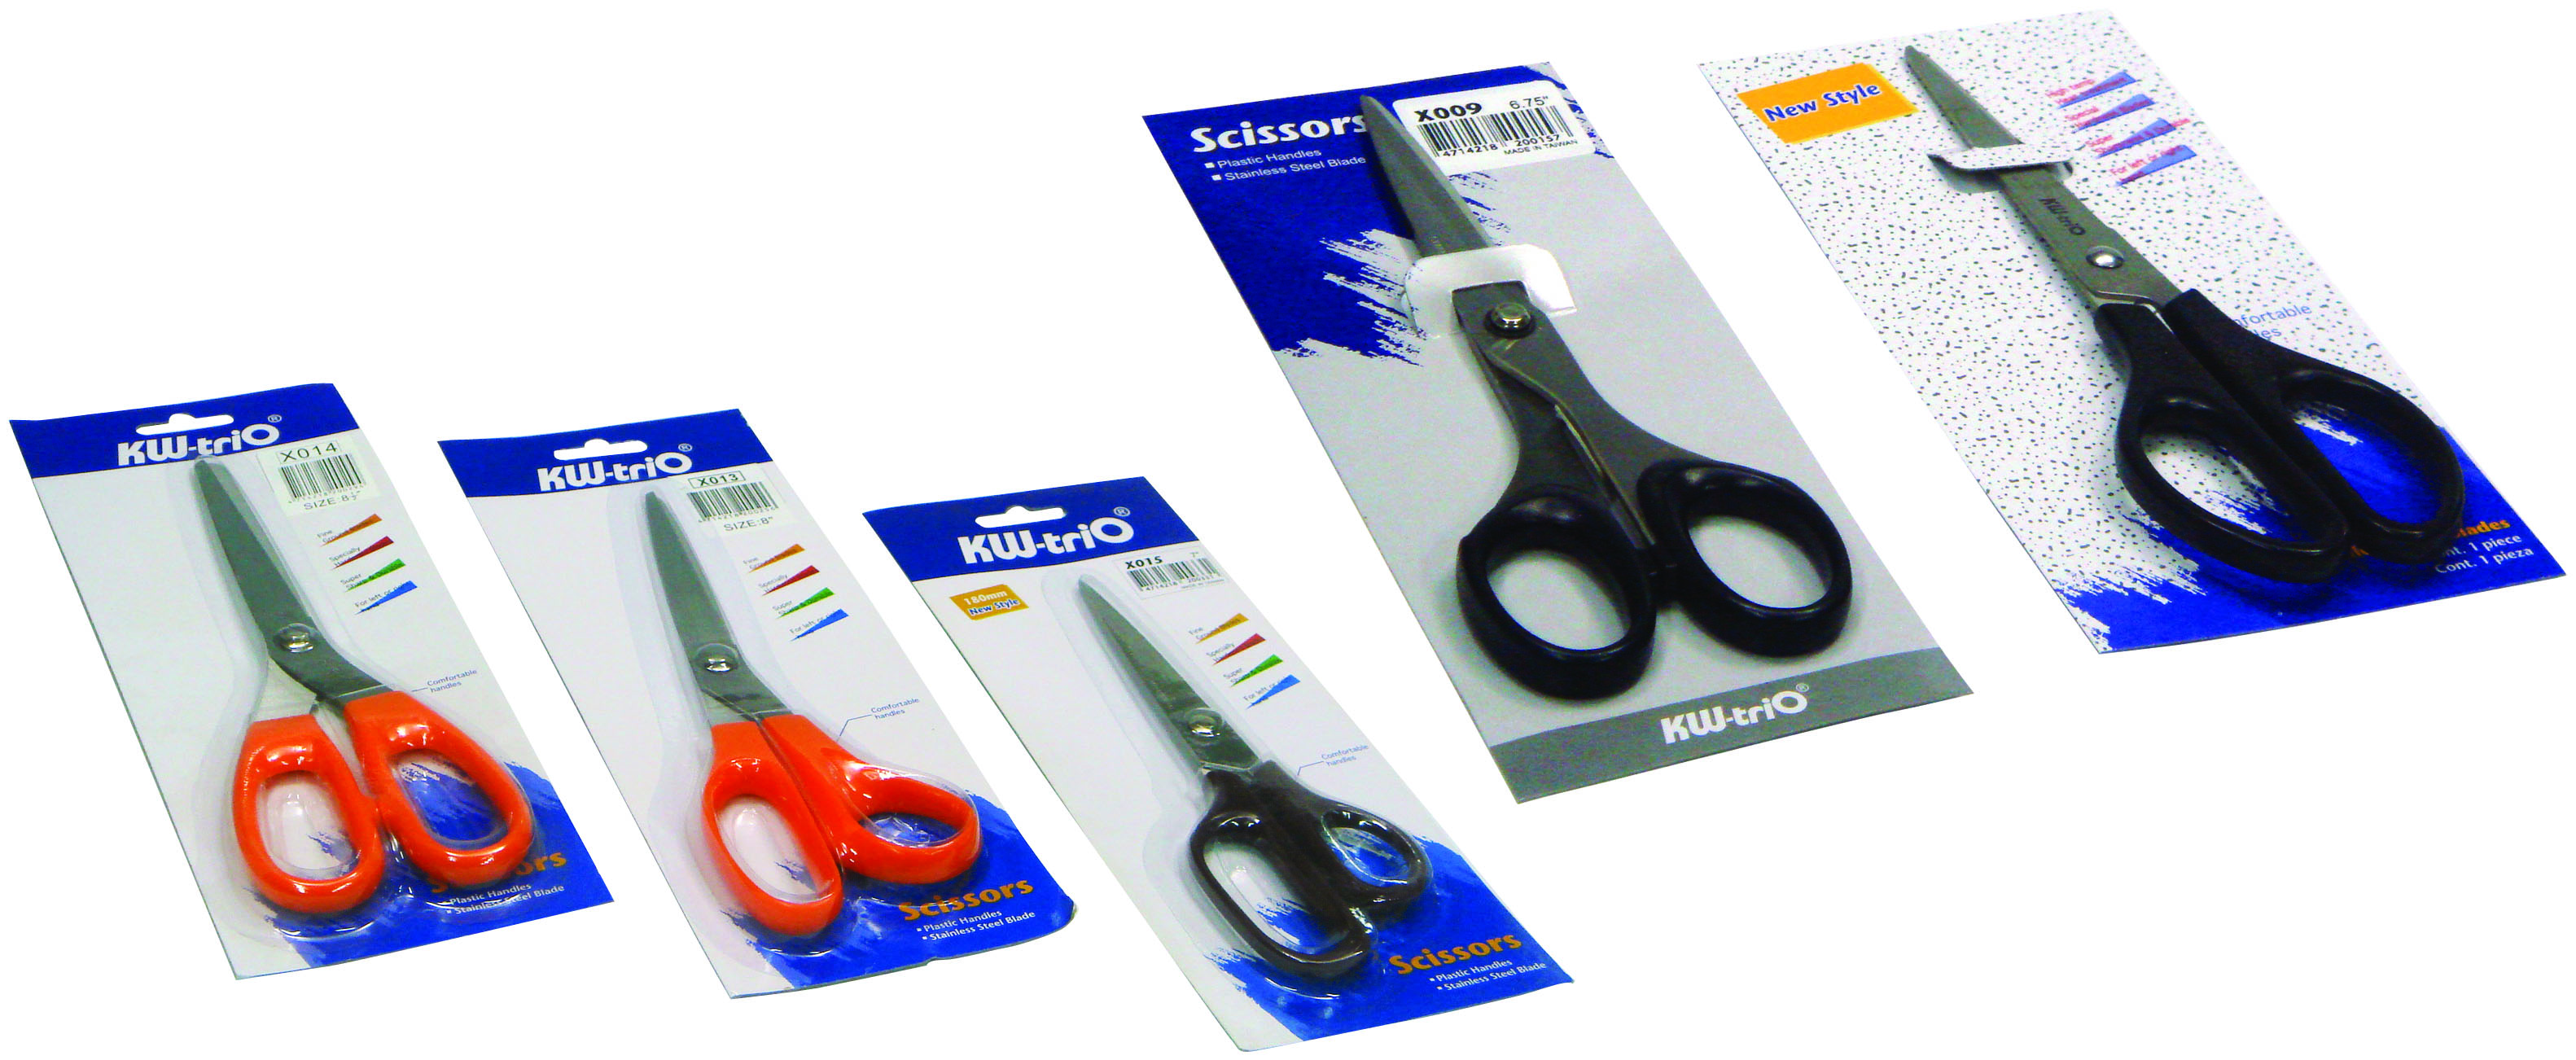 KW Trio scissors  21cm